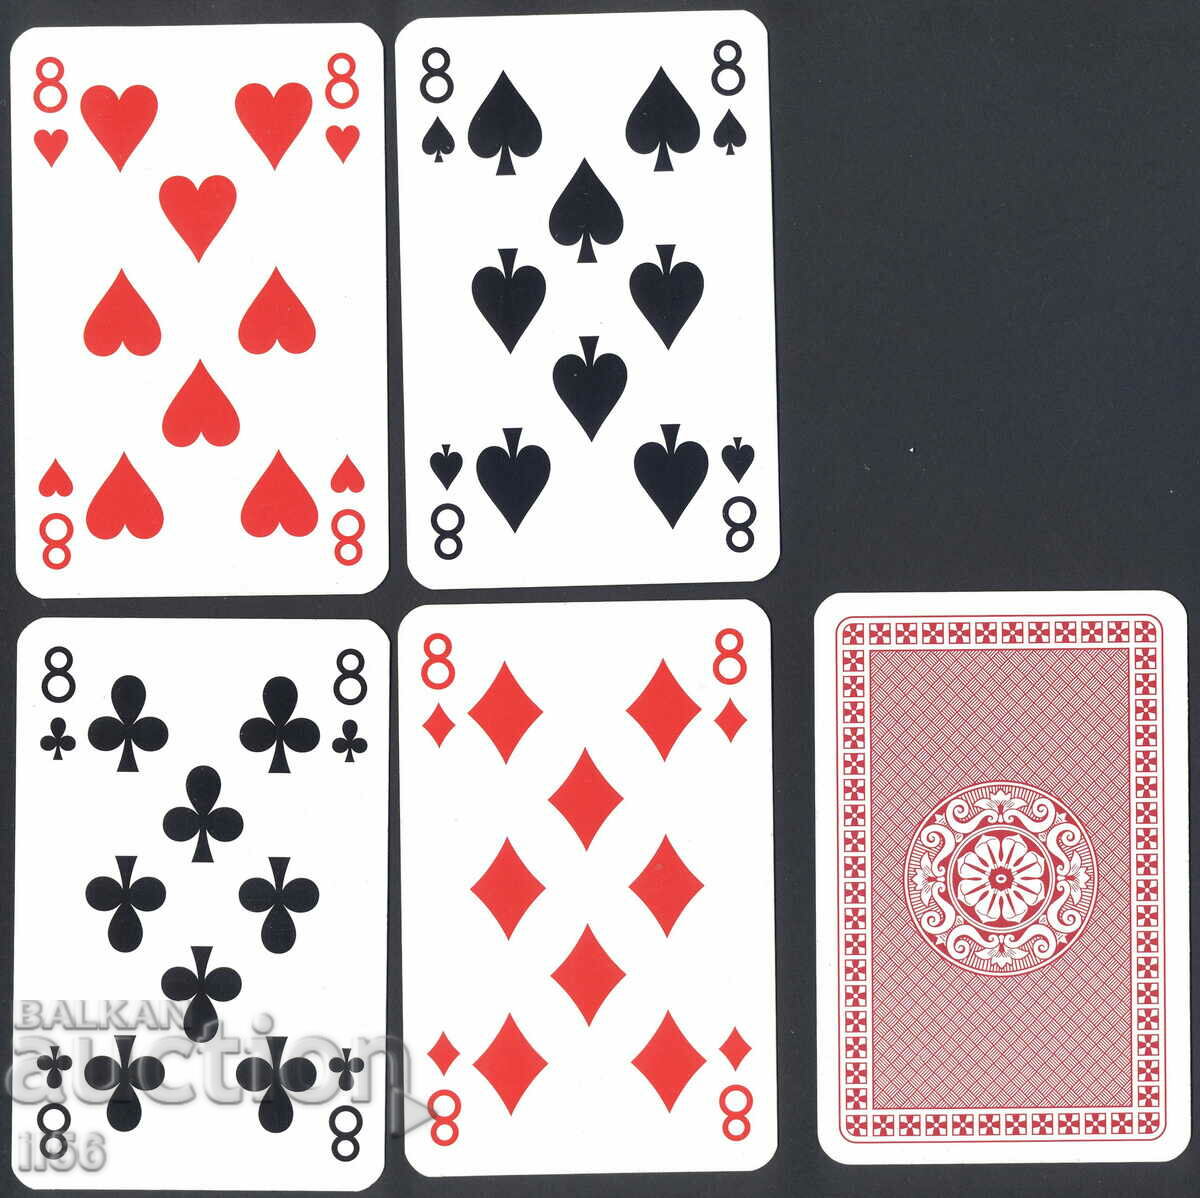 Τραπουλόχαρτα - πόκερ - τετράγωνα οκτάρια